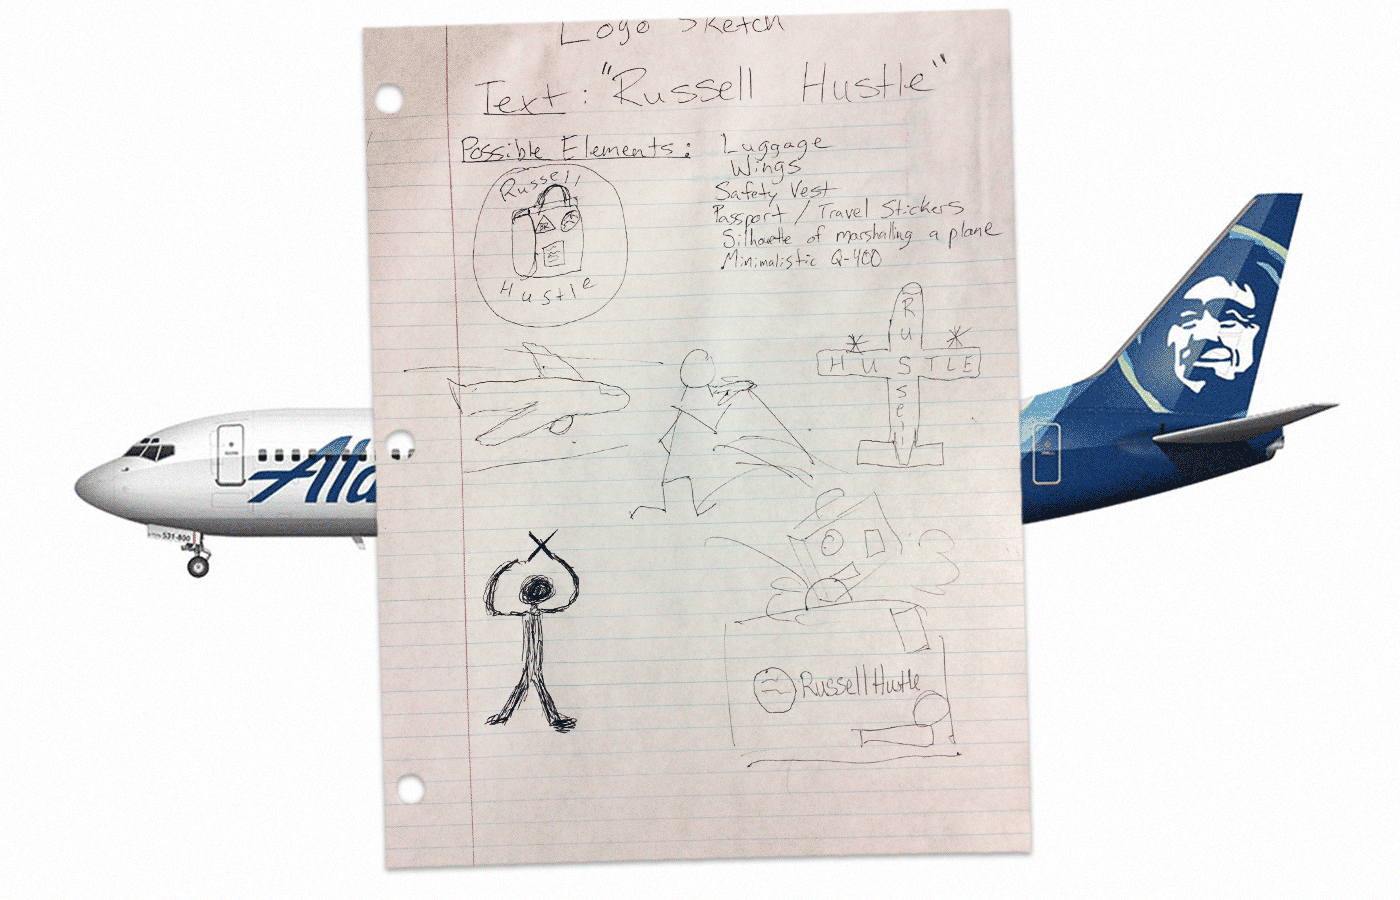 Рисунок Ричарда Расселла, который он сделал во время учебы в колледже, — с логотипом вымышленной авиакомпании. Источник: Pholder / Norebbo. Коллаж: Саша Пожиток, Букмейт